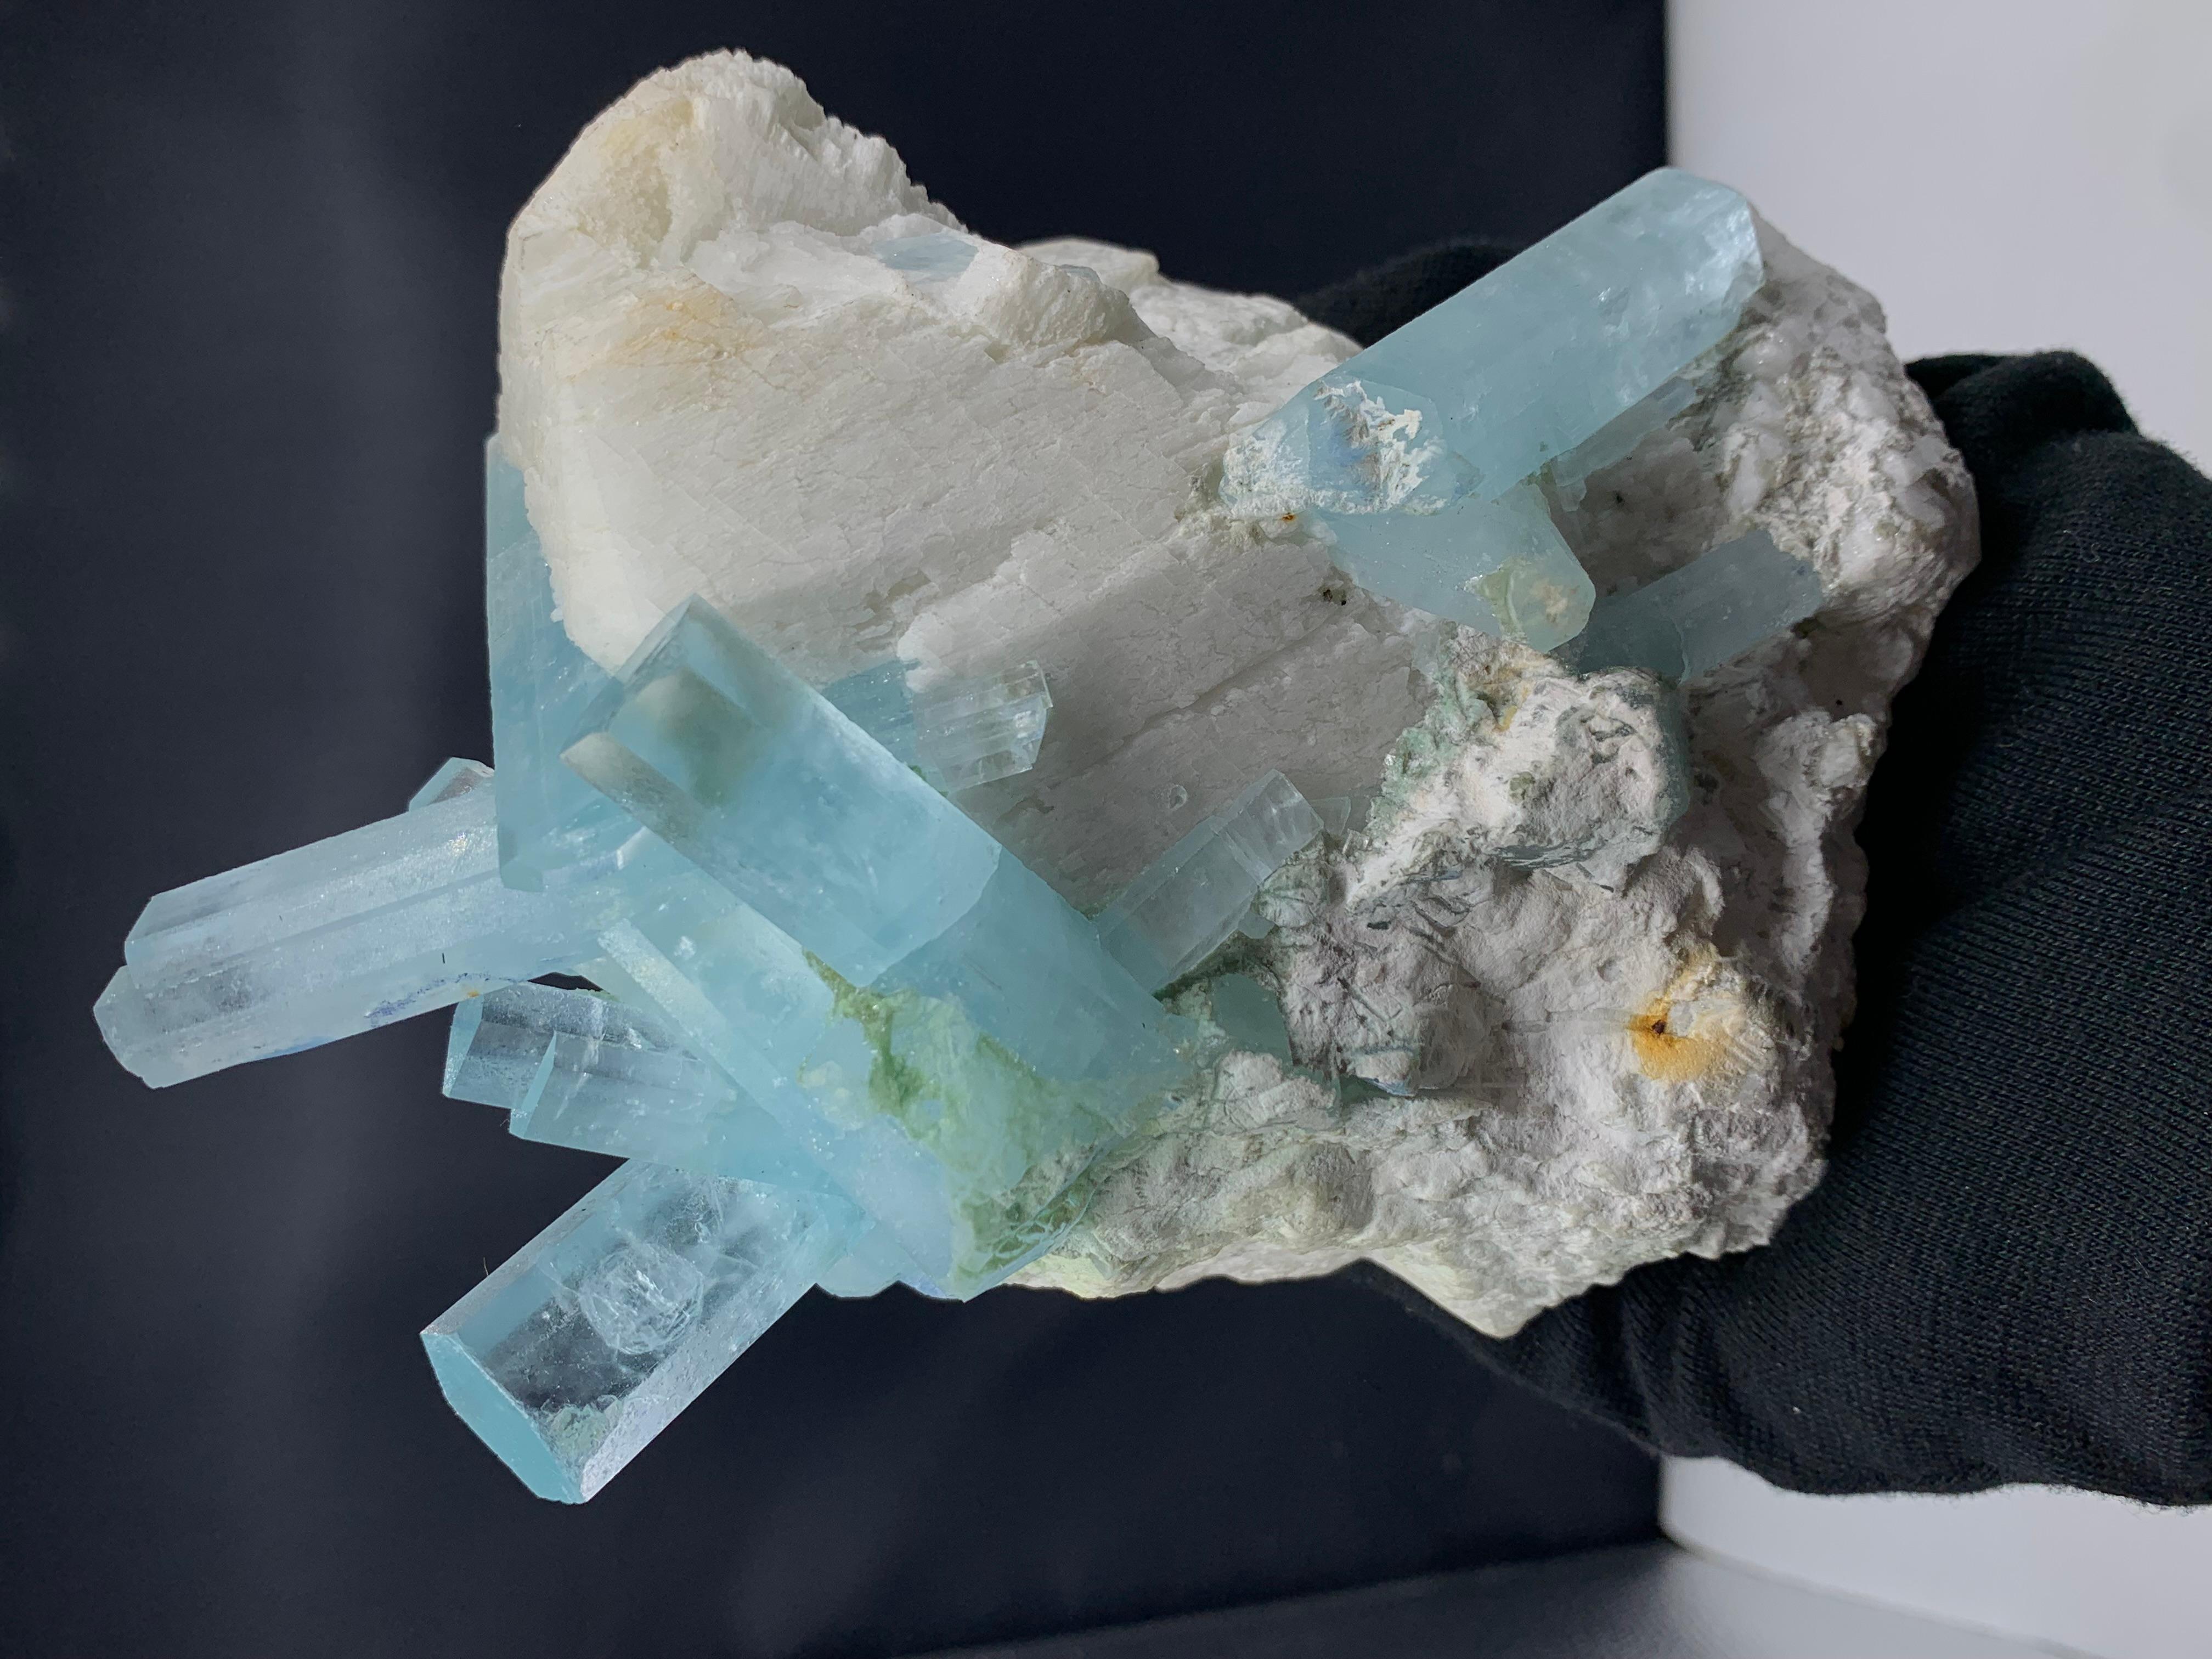 2 kg Plus Pretty Aquamarine Crystal Bunch Attach With Feldspar From Pakistan 

Weight: 2 Kg Plus 
Dimension: 16 x 13.4 x 11 Cm
Origin: Shigar Valley, Skardu District, Gilgit Baltistan Province, Pakistan

Aquamarine is a pale-blue to light-green